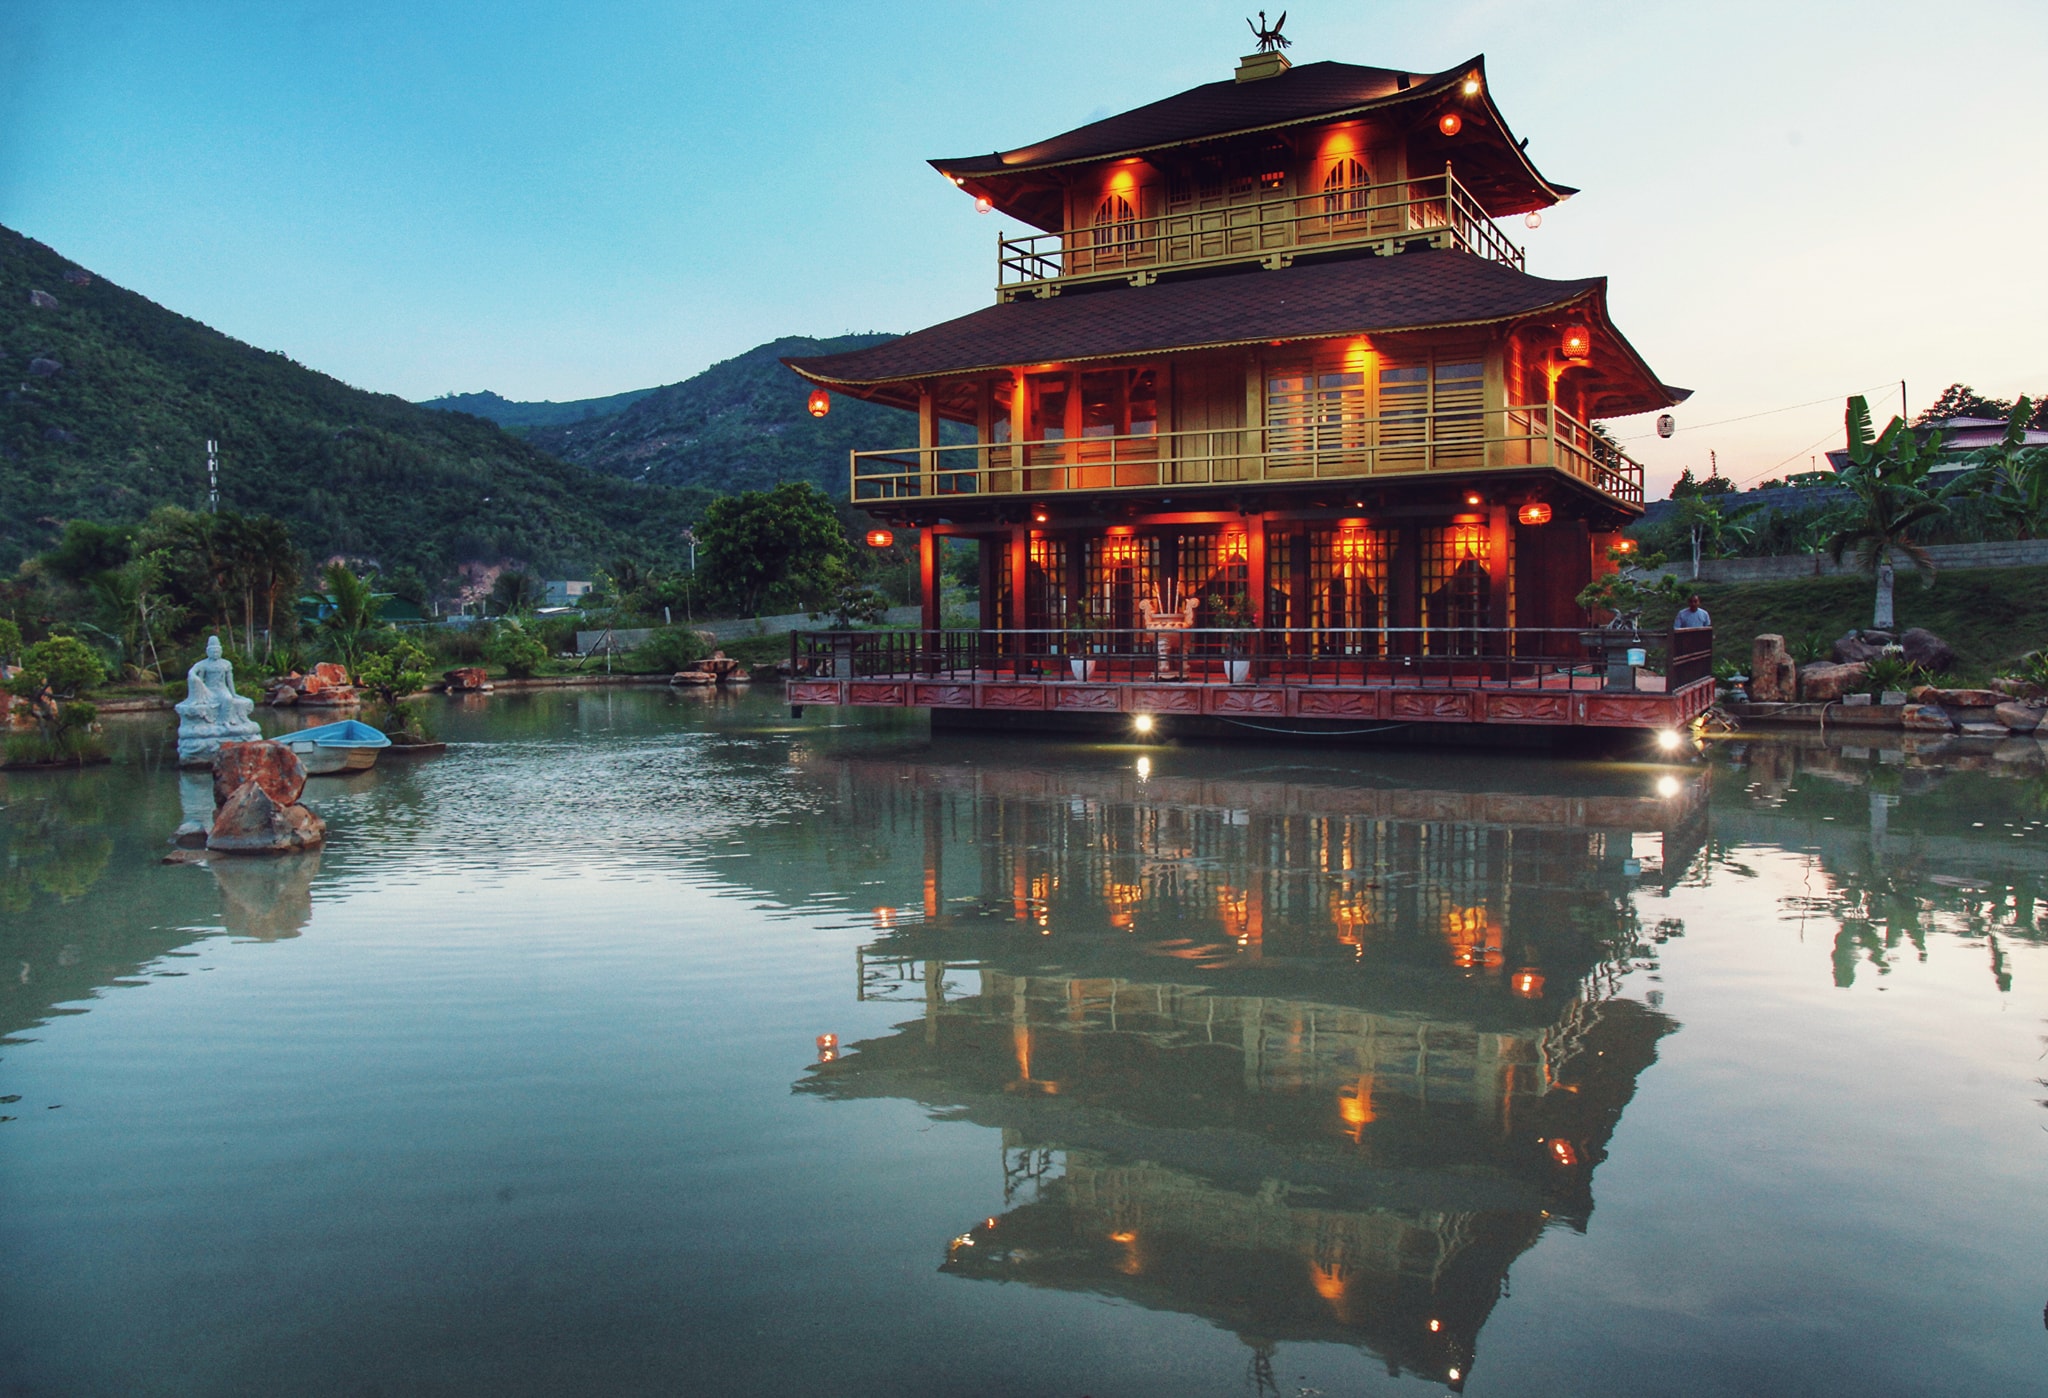 Rủ nhau vãn cảnh ngôi chùa mang hơi hướng kiến trúc chùa vàng Nhật Bản ...